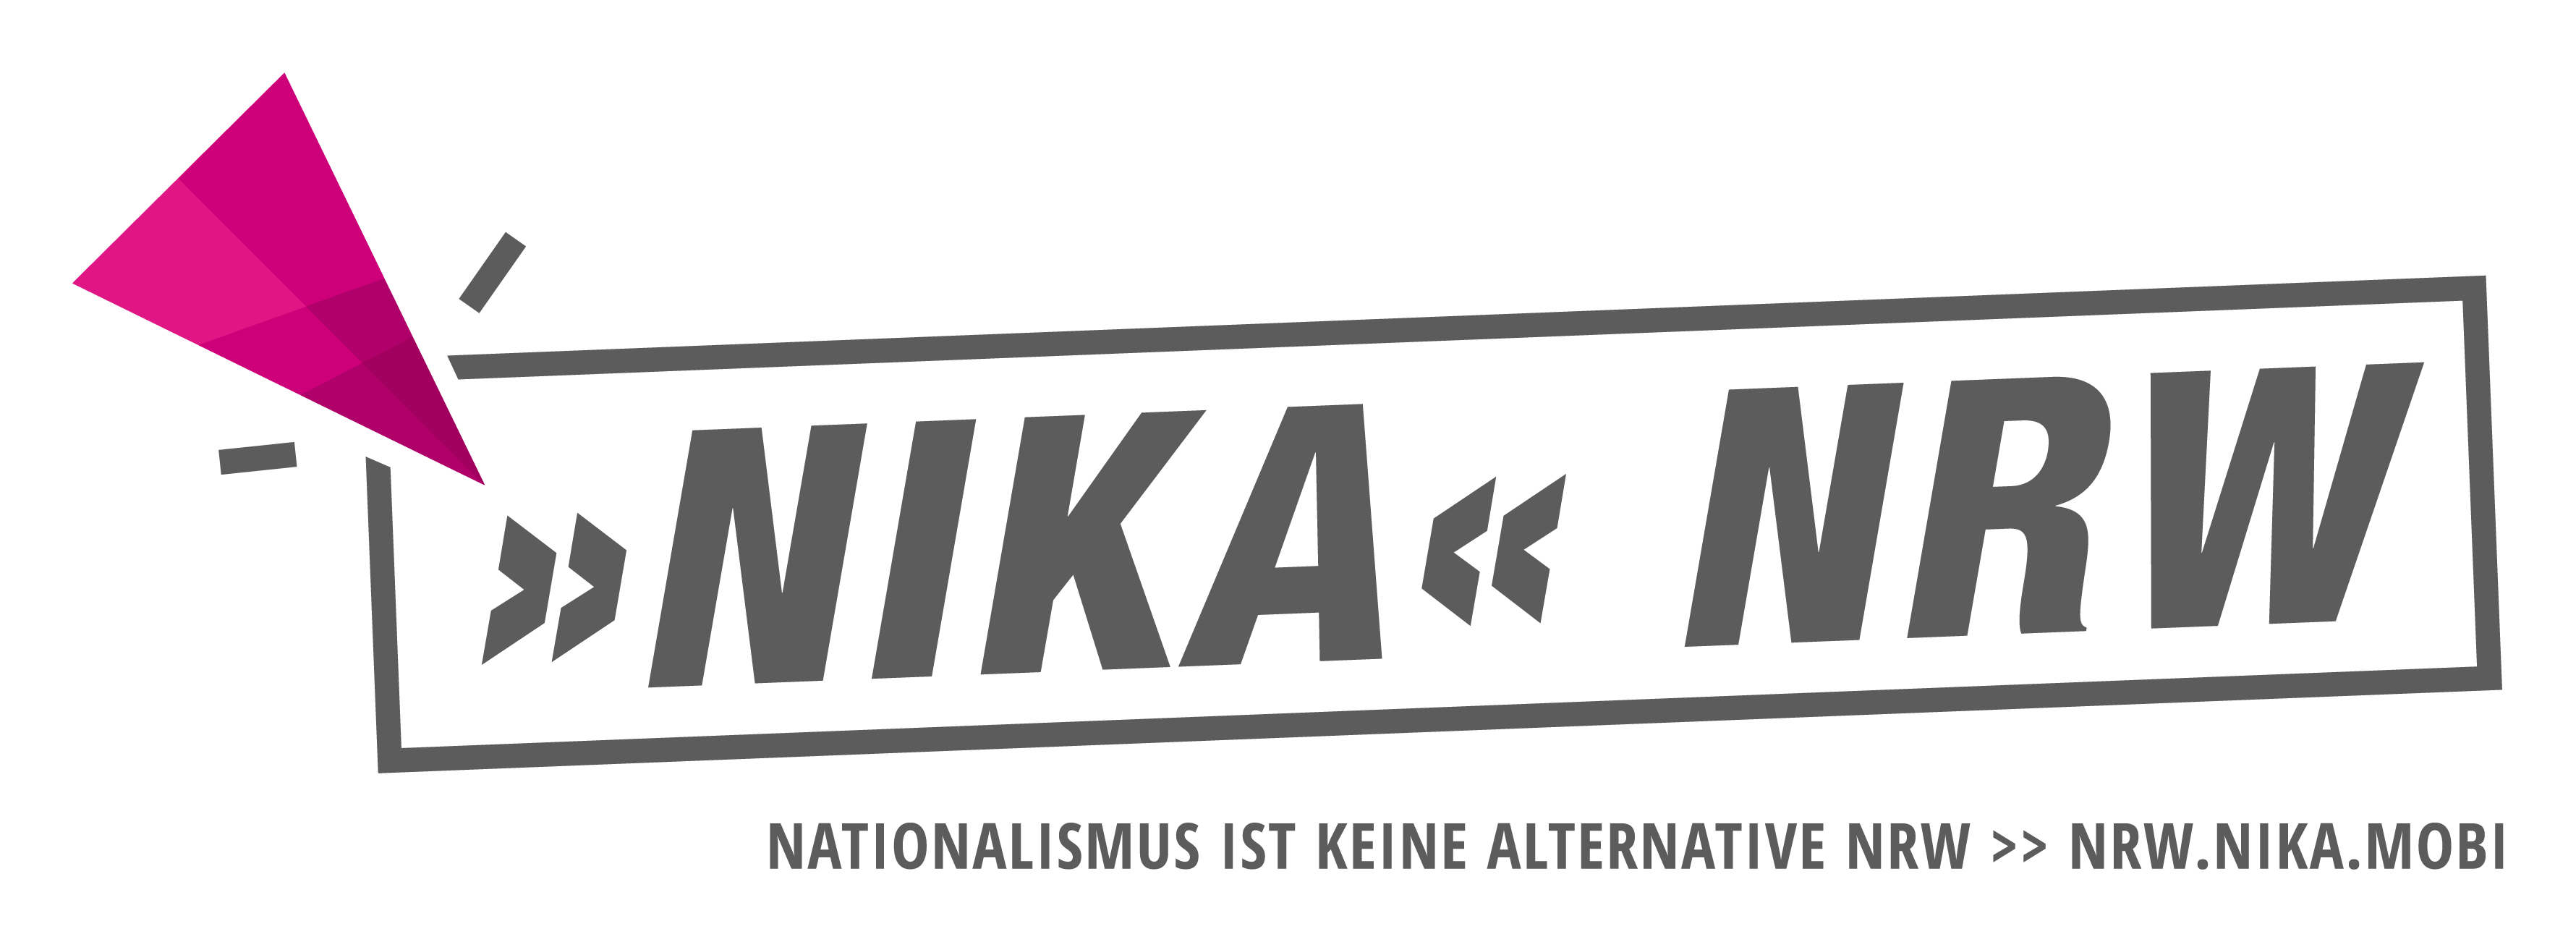 Nationalismus ist keine Alternative NRW Logo